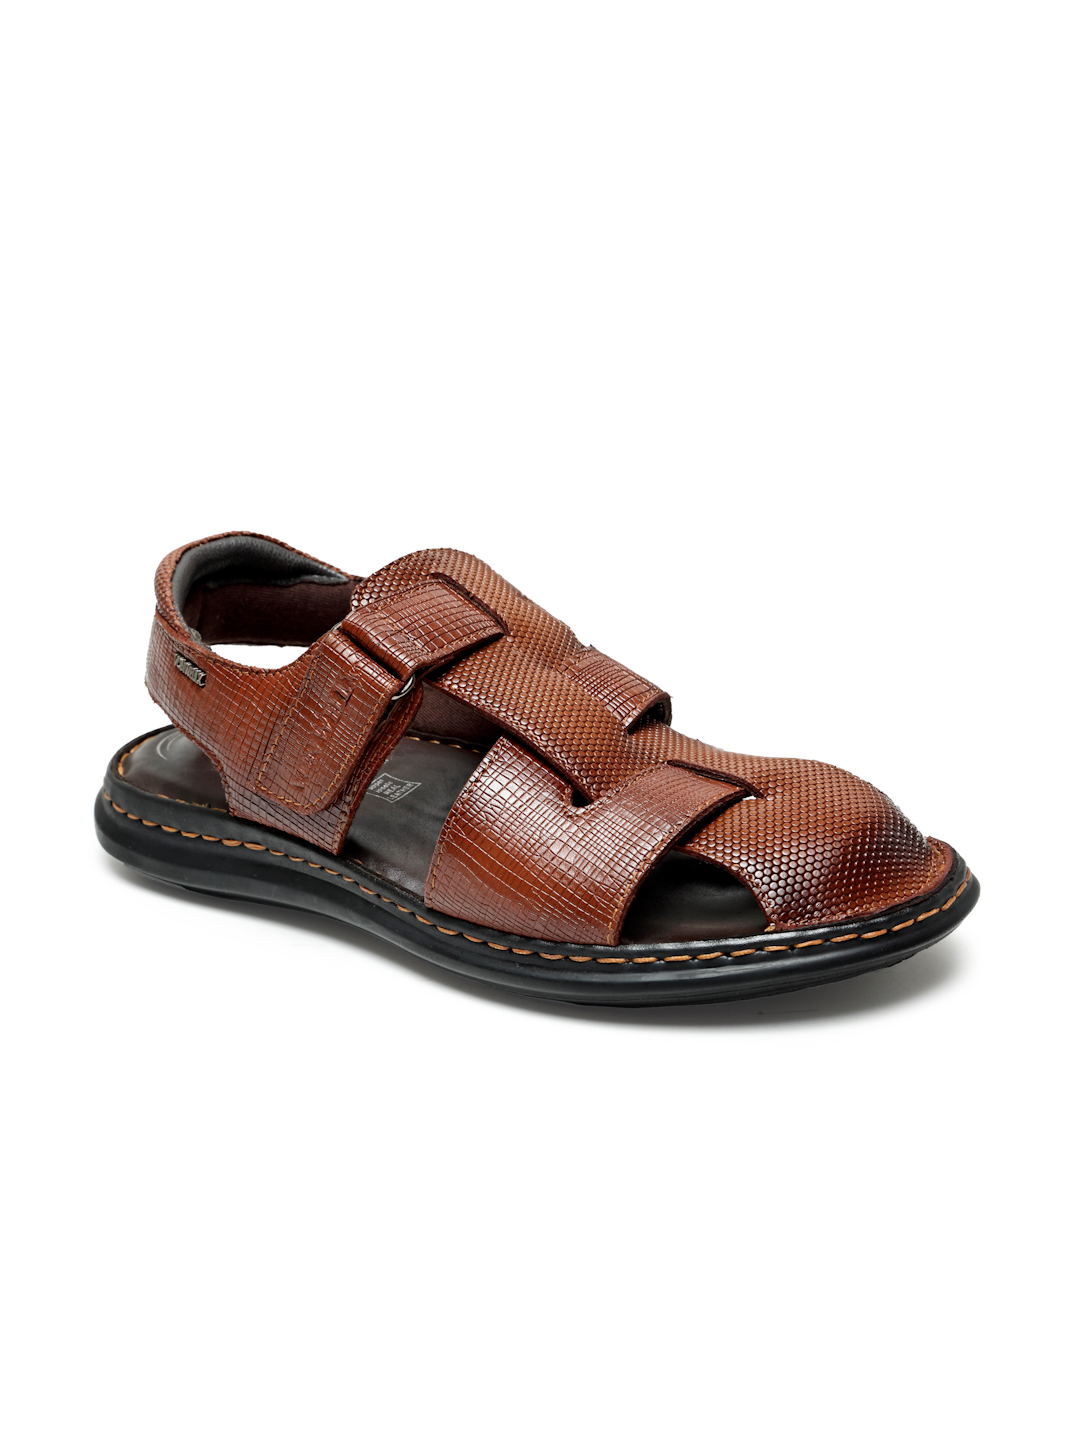 Buy Von Wellx Germany Comfort Men's Tan Sandals Morgen Online in Doha